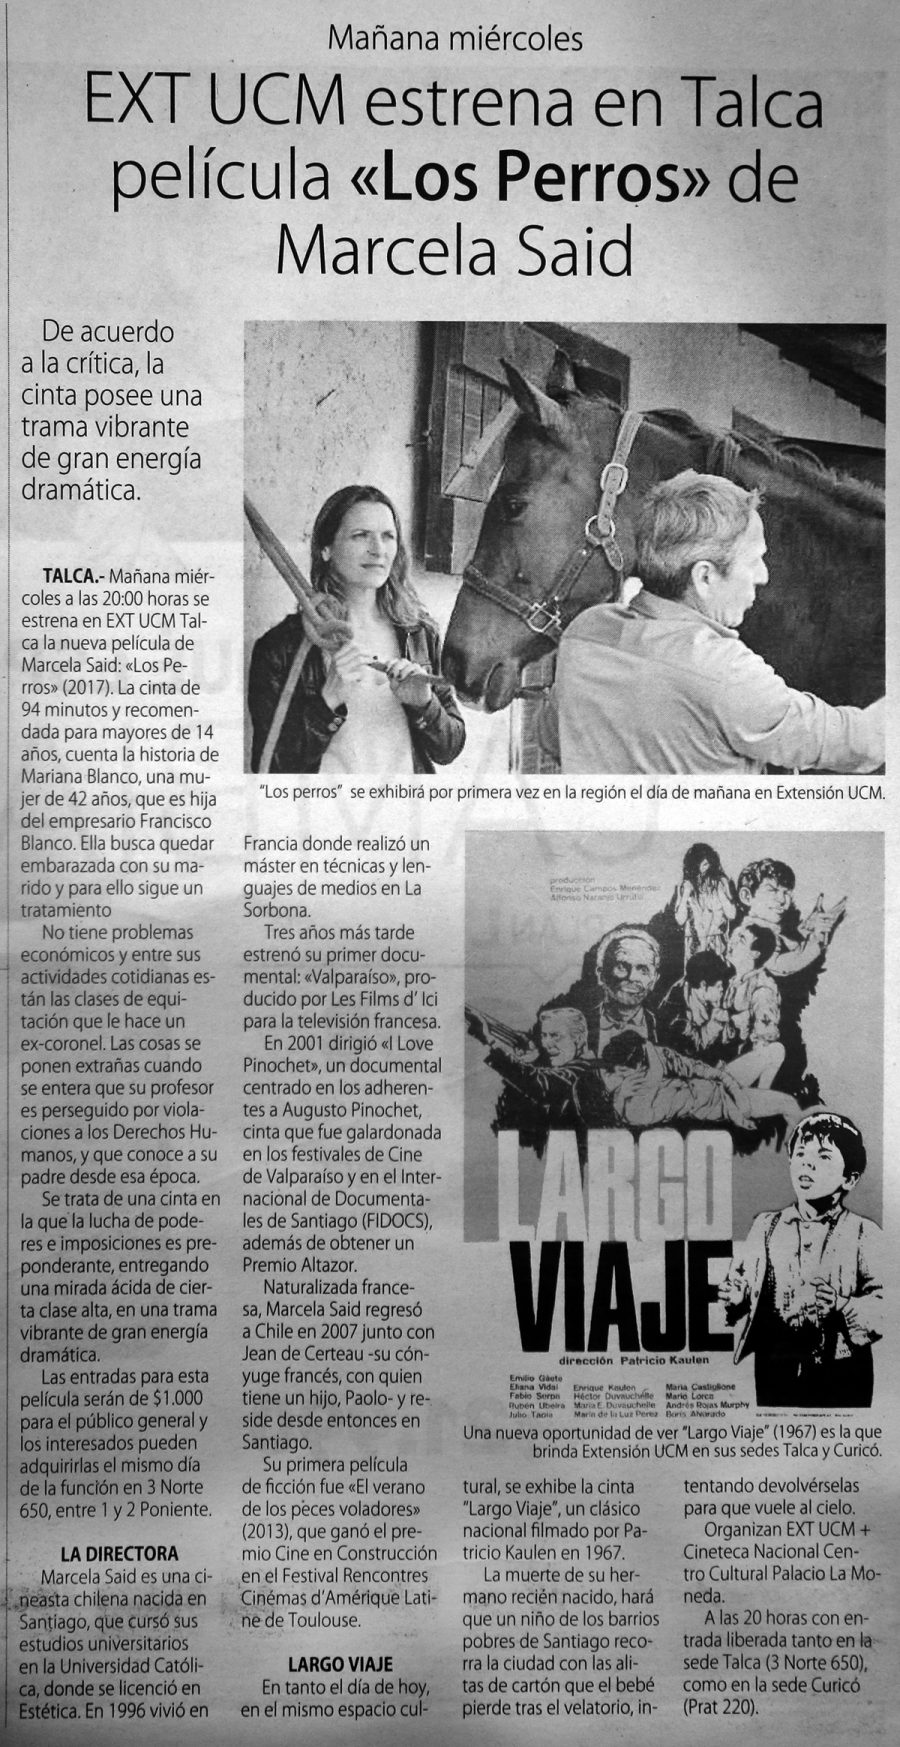 10 de abril en Diario El Centro: “EXT UCM estrena en Talca película “Los perros” de Marcela Said”